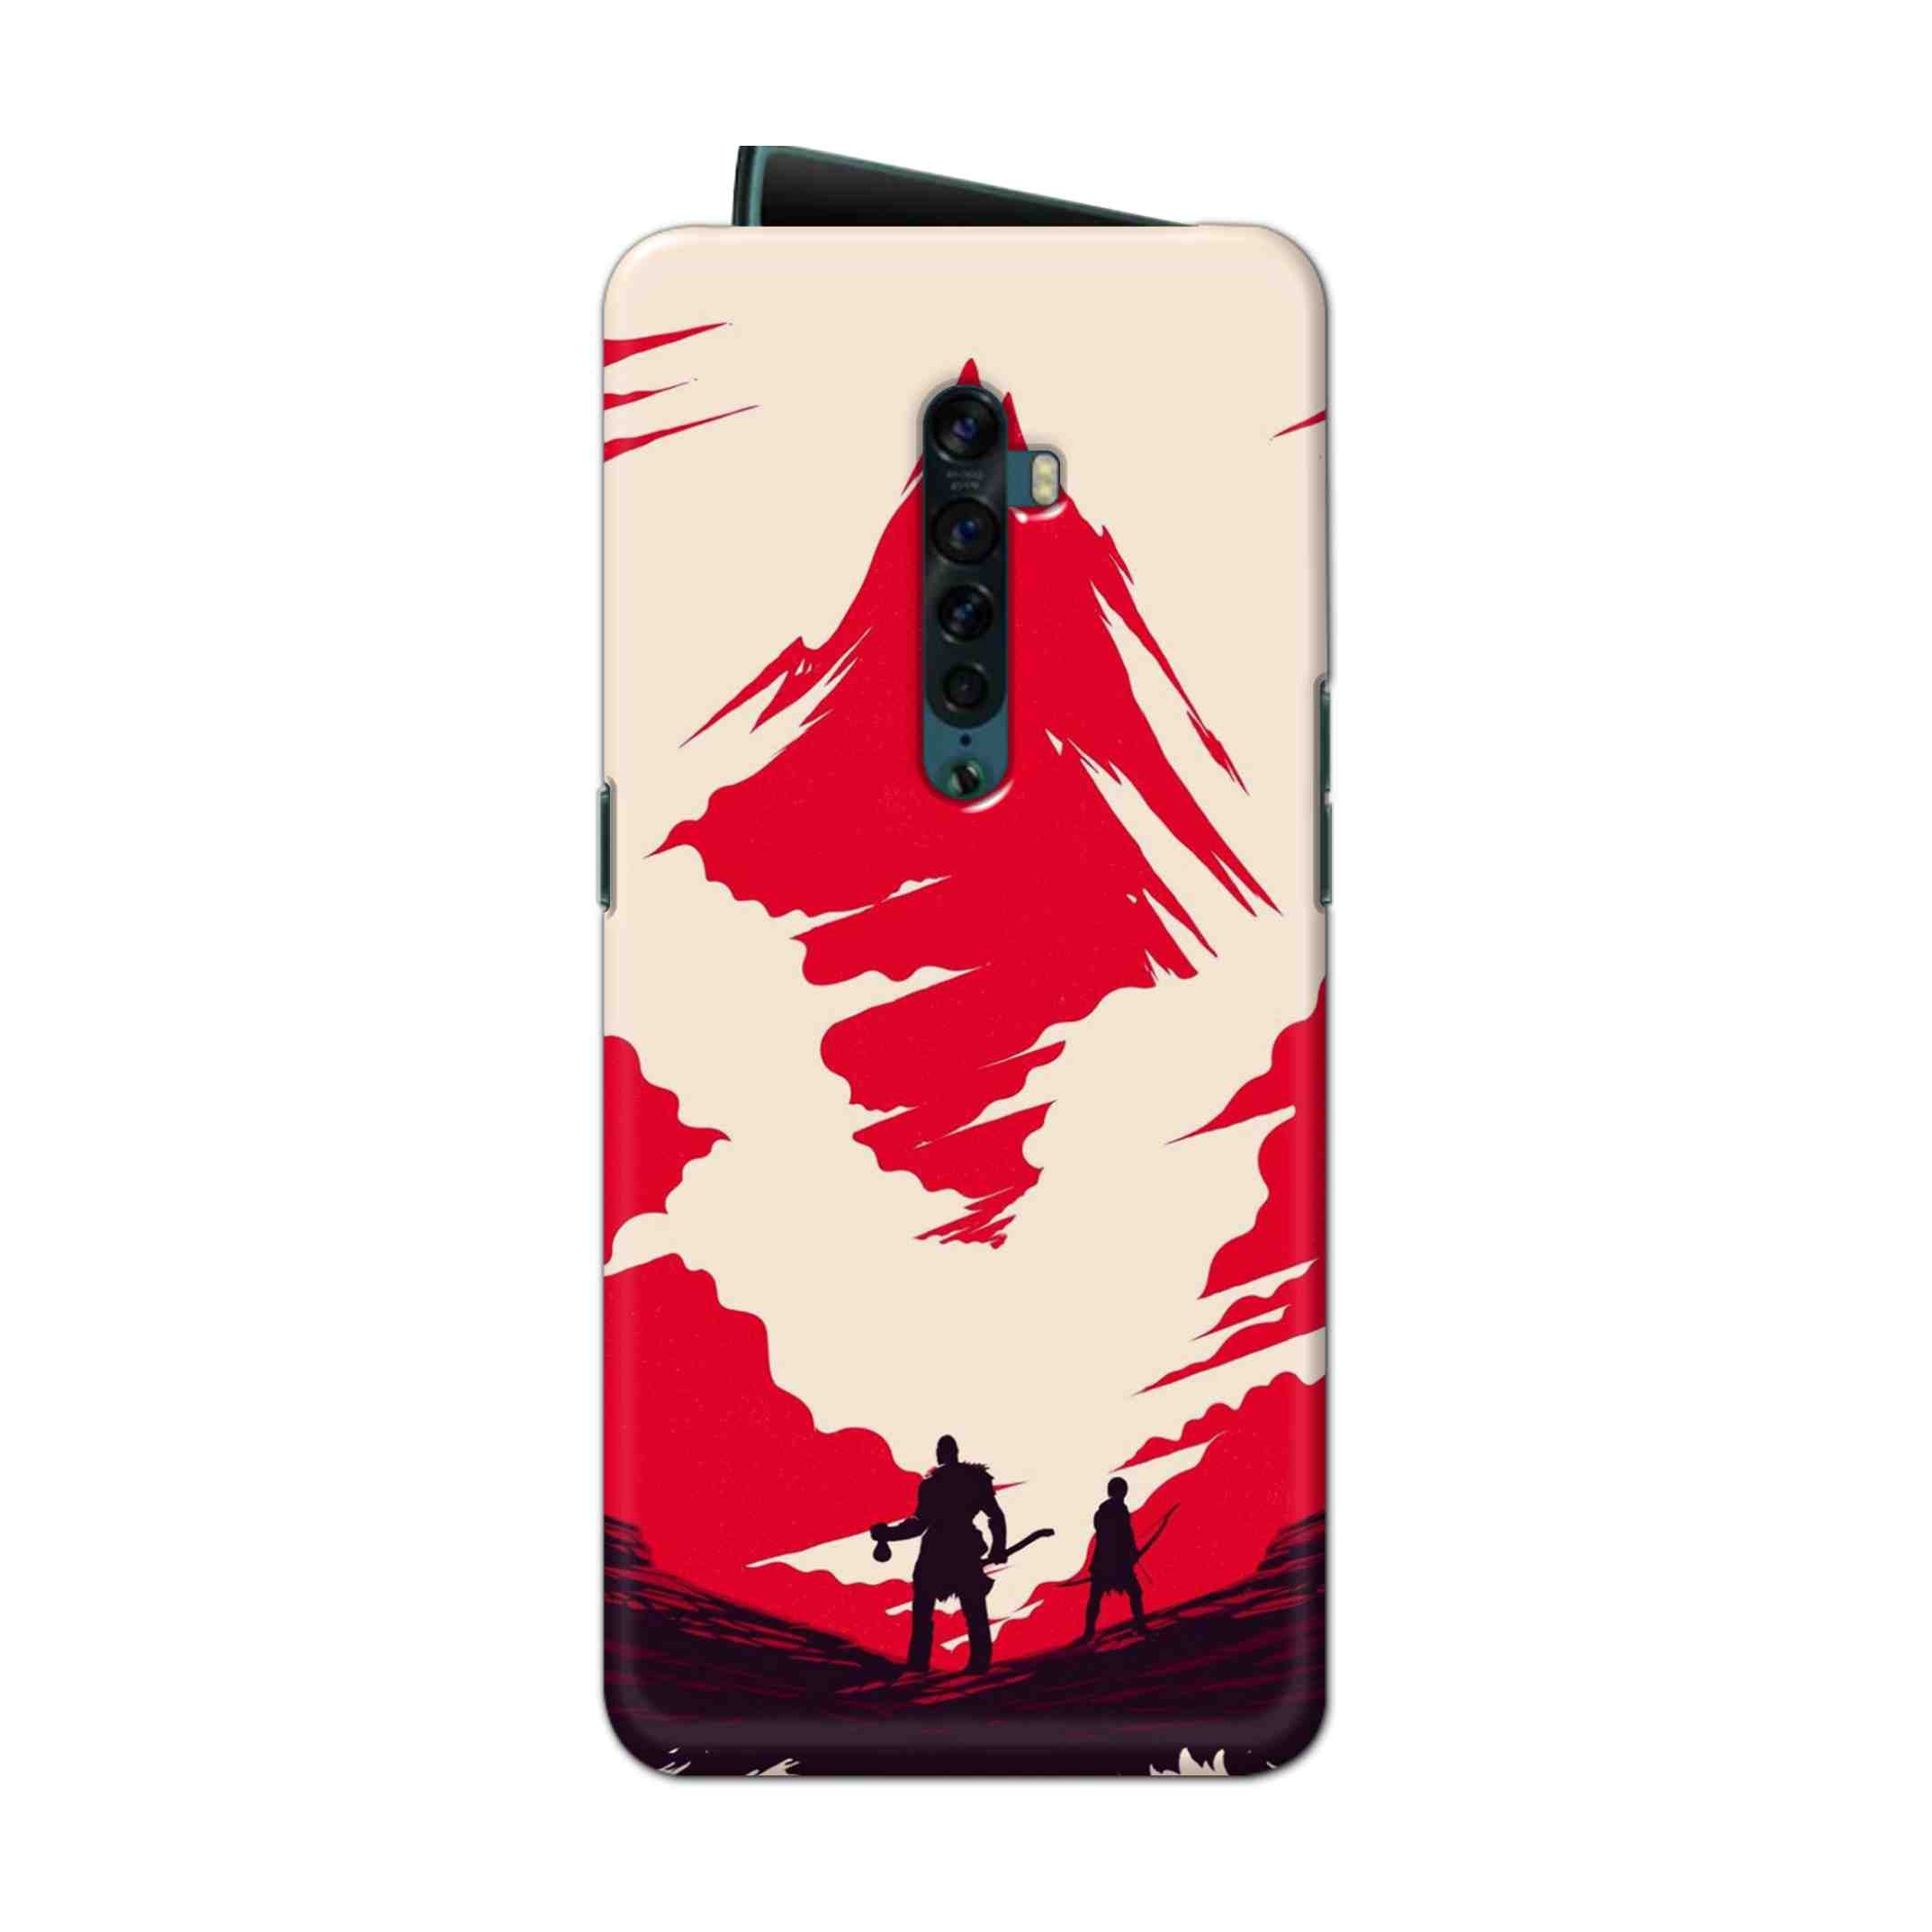 Buy God Of War Art Hard Back Mobile Phone Case Cover For Oppo Reno 2 Online